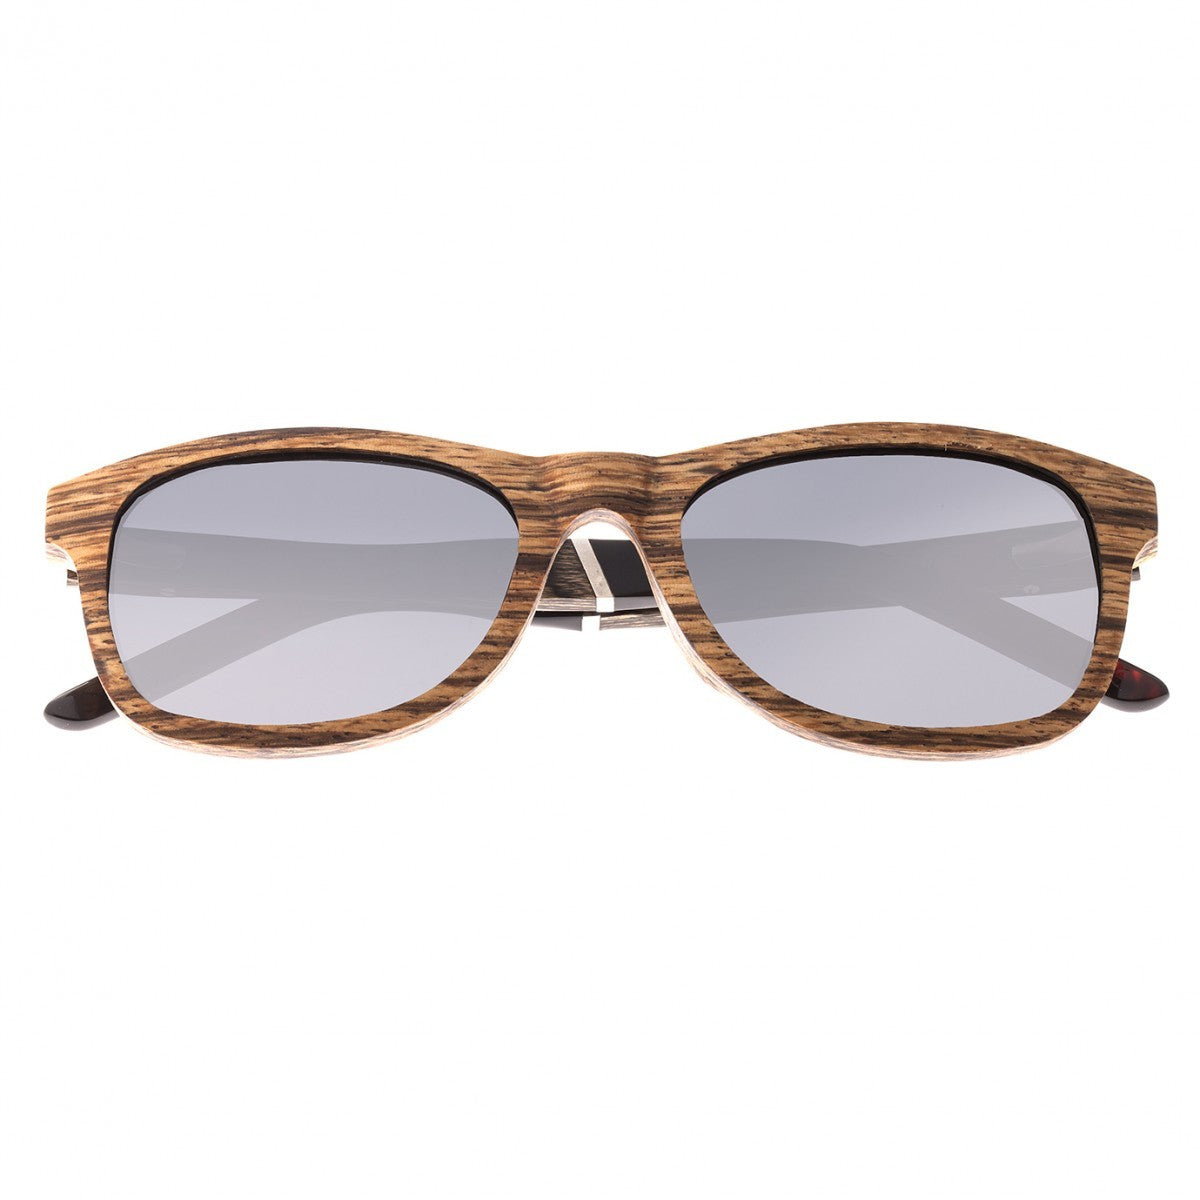 Earth Wood El Nido Polarized Sunglasses - Zebrawood/Silver - ESG070Z